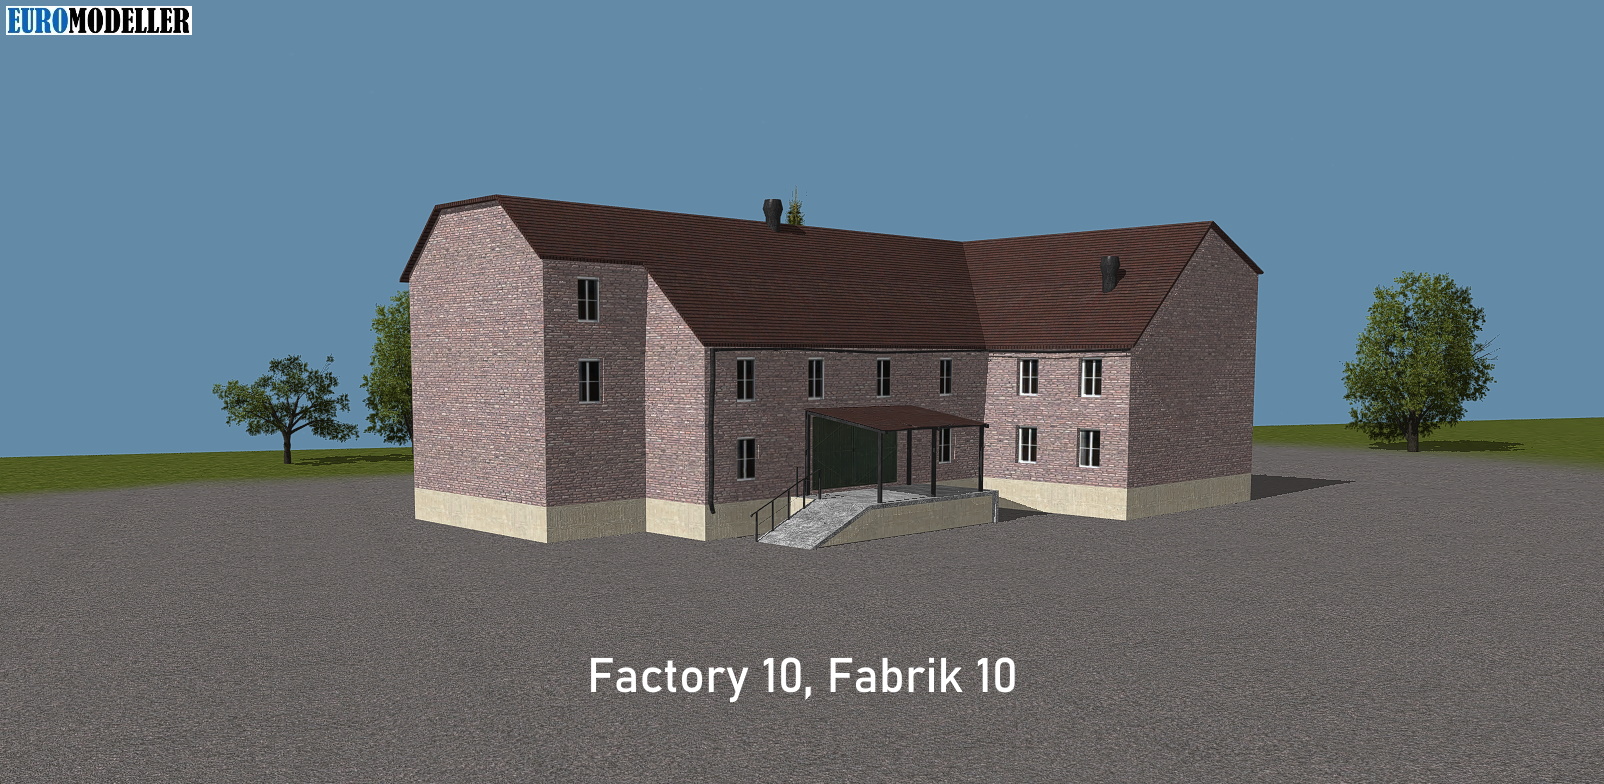 Factory 10, Fabrik 10